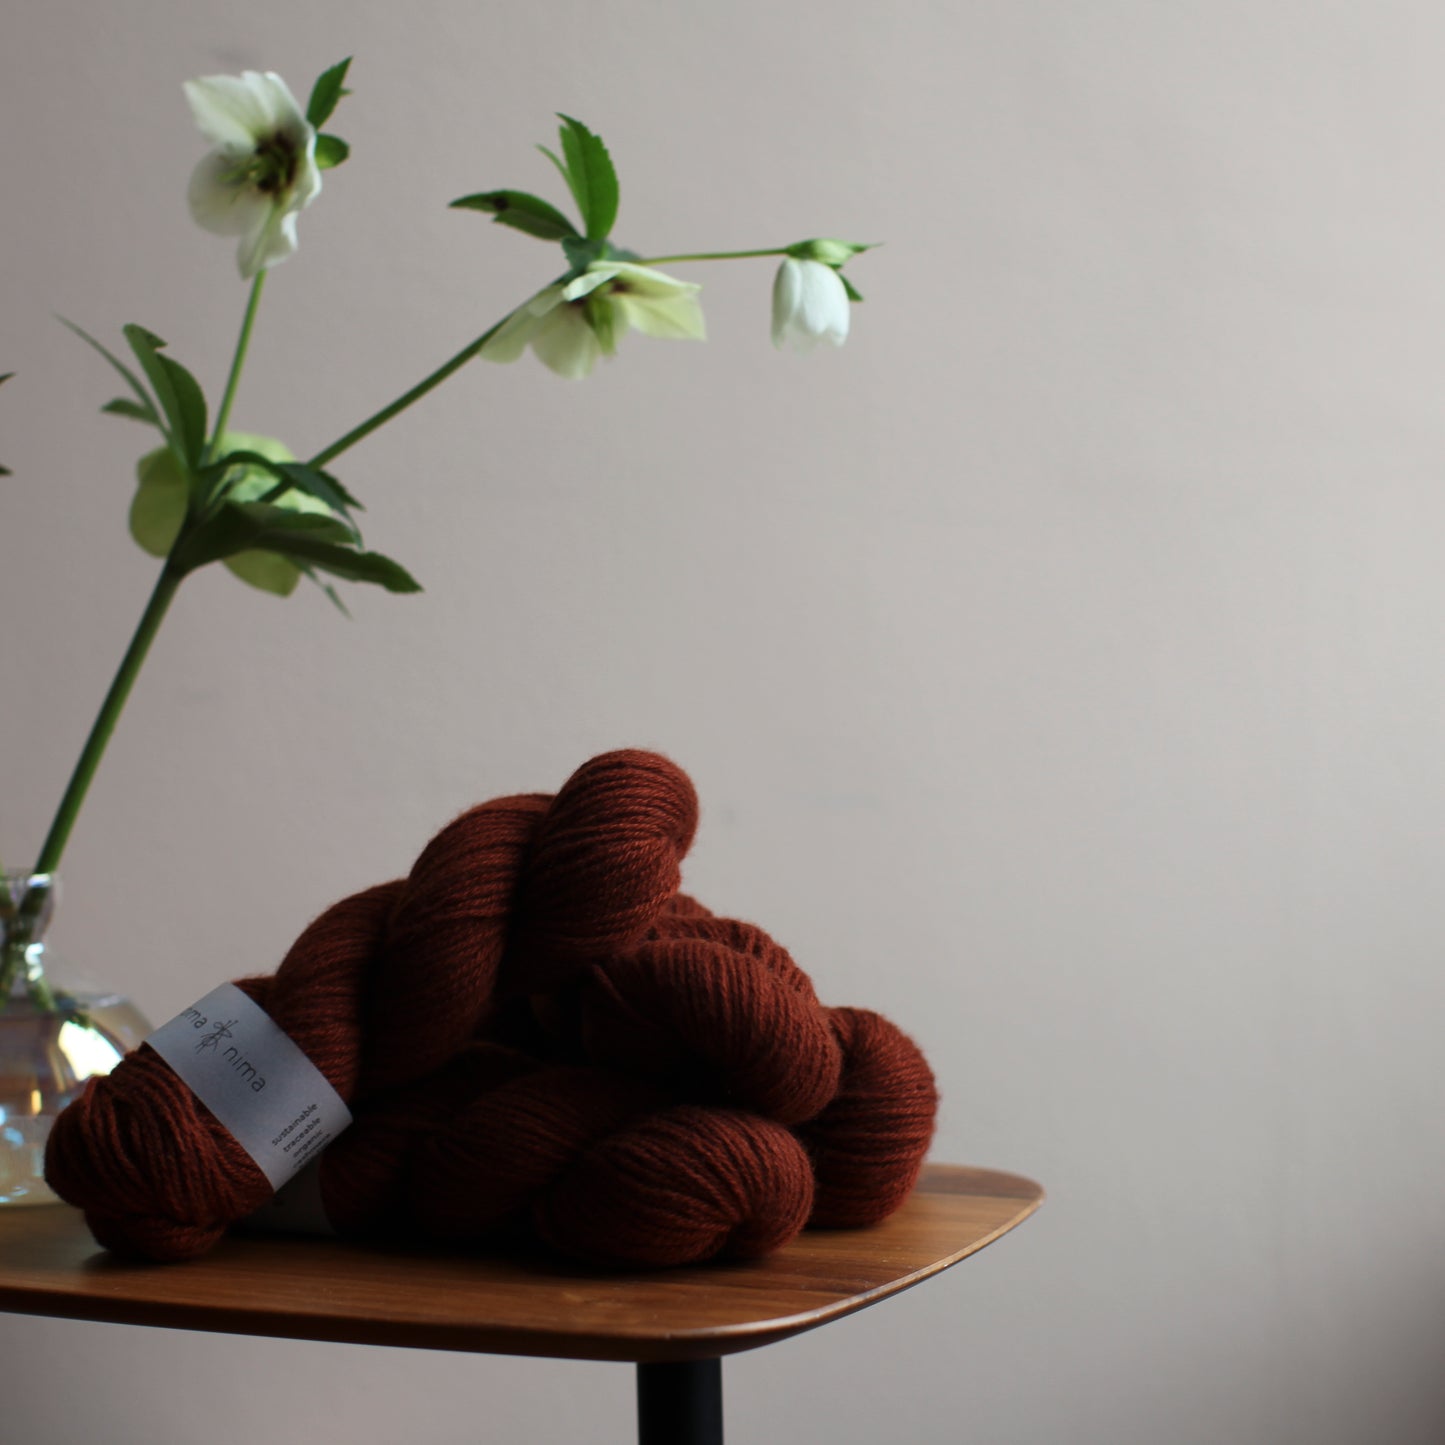 DK cashmere yarn